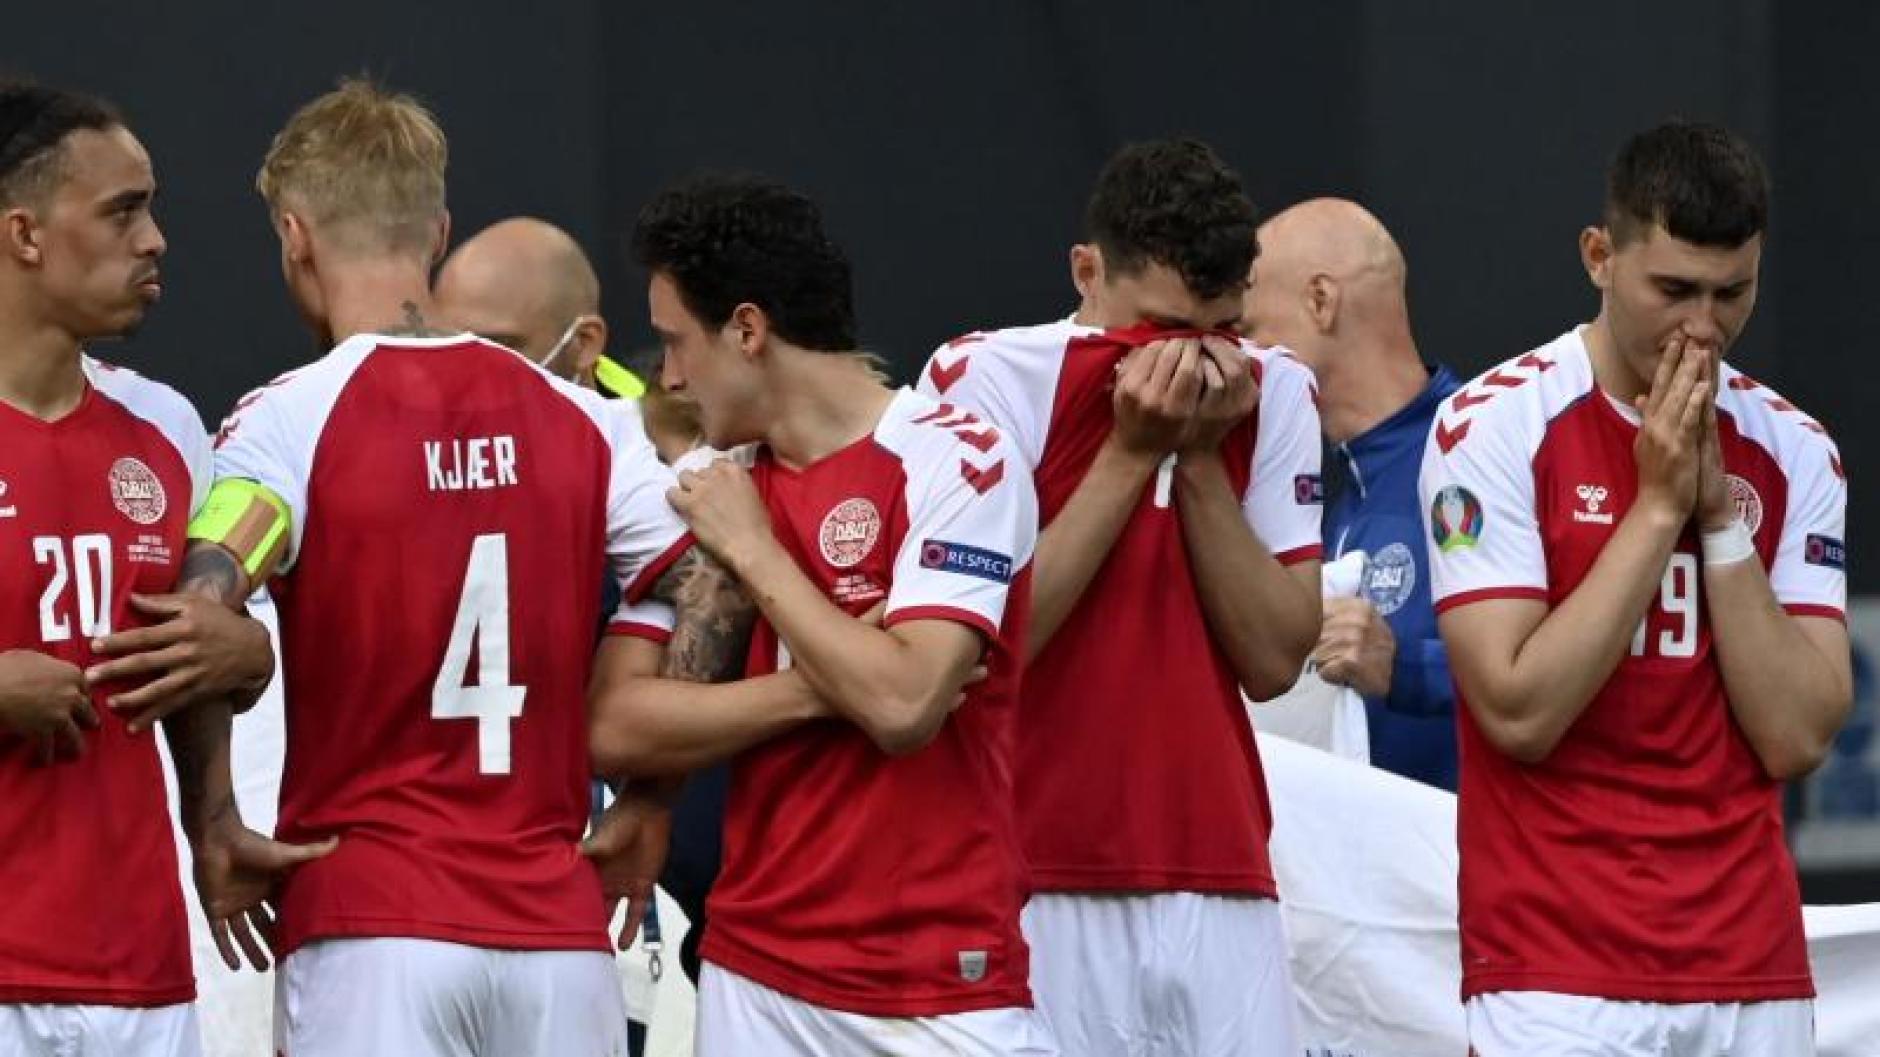 Dänemark Eriksen / Eriksen löst für Dänemark das WM-Ticket ...